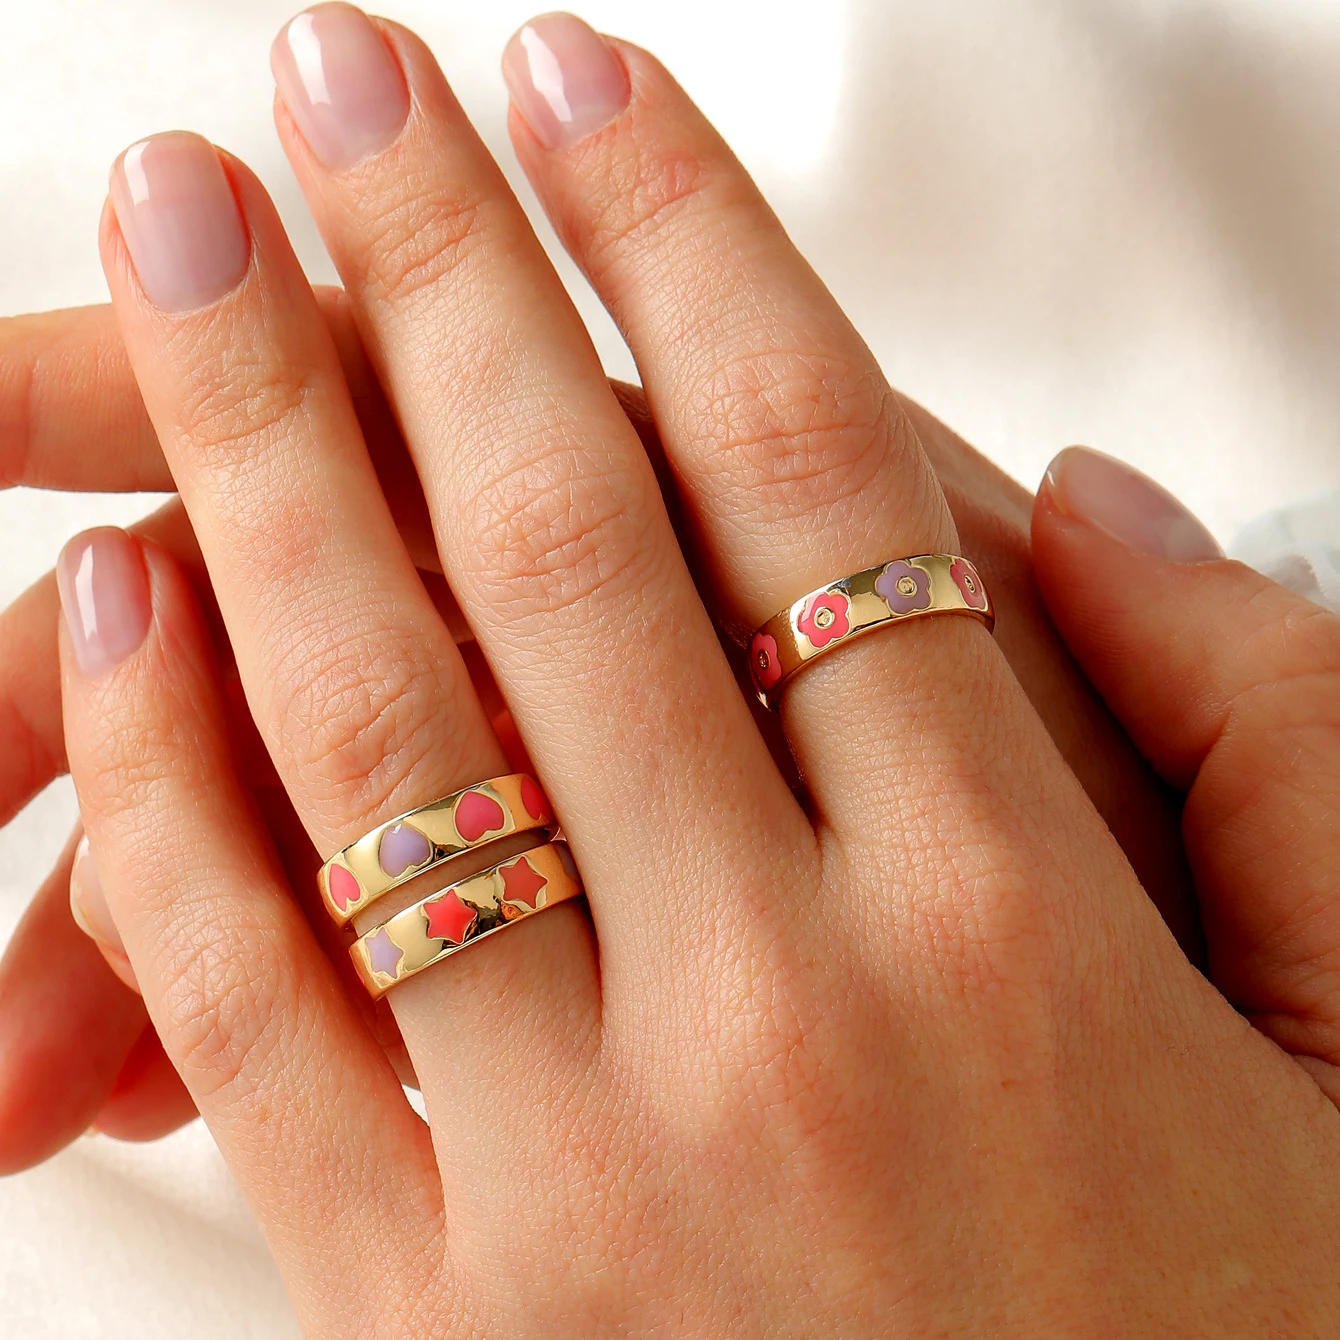 Cute fashion ring | Fashion rings, Cute rings, Womens jewelry rings